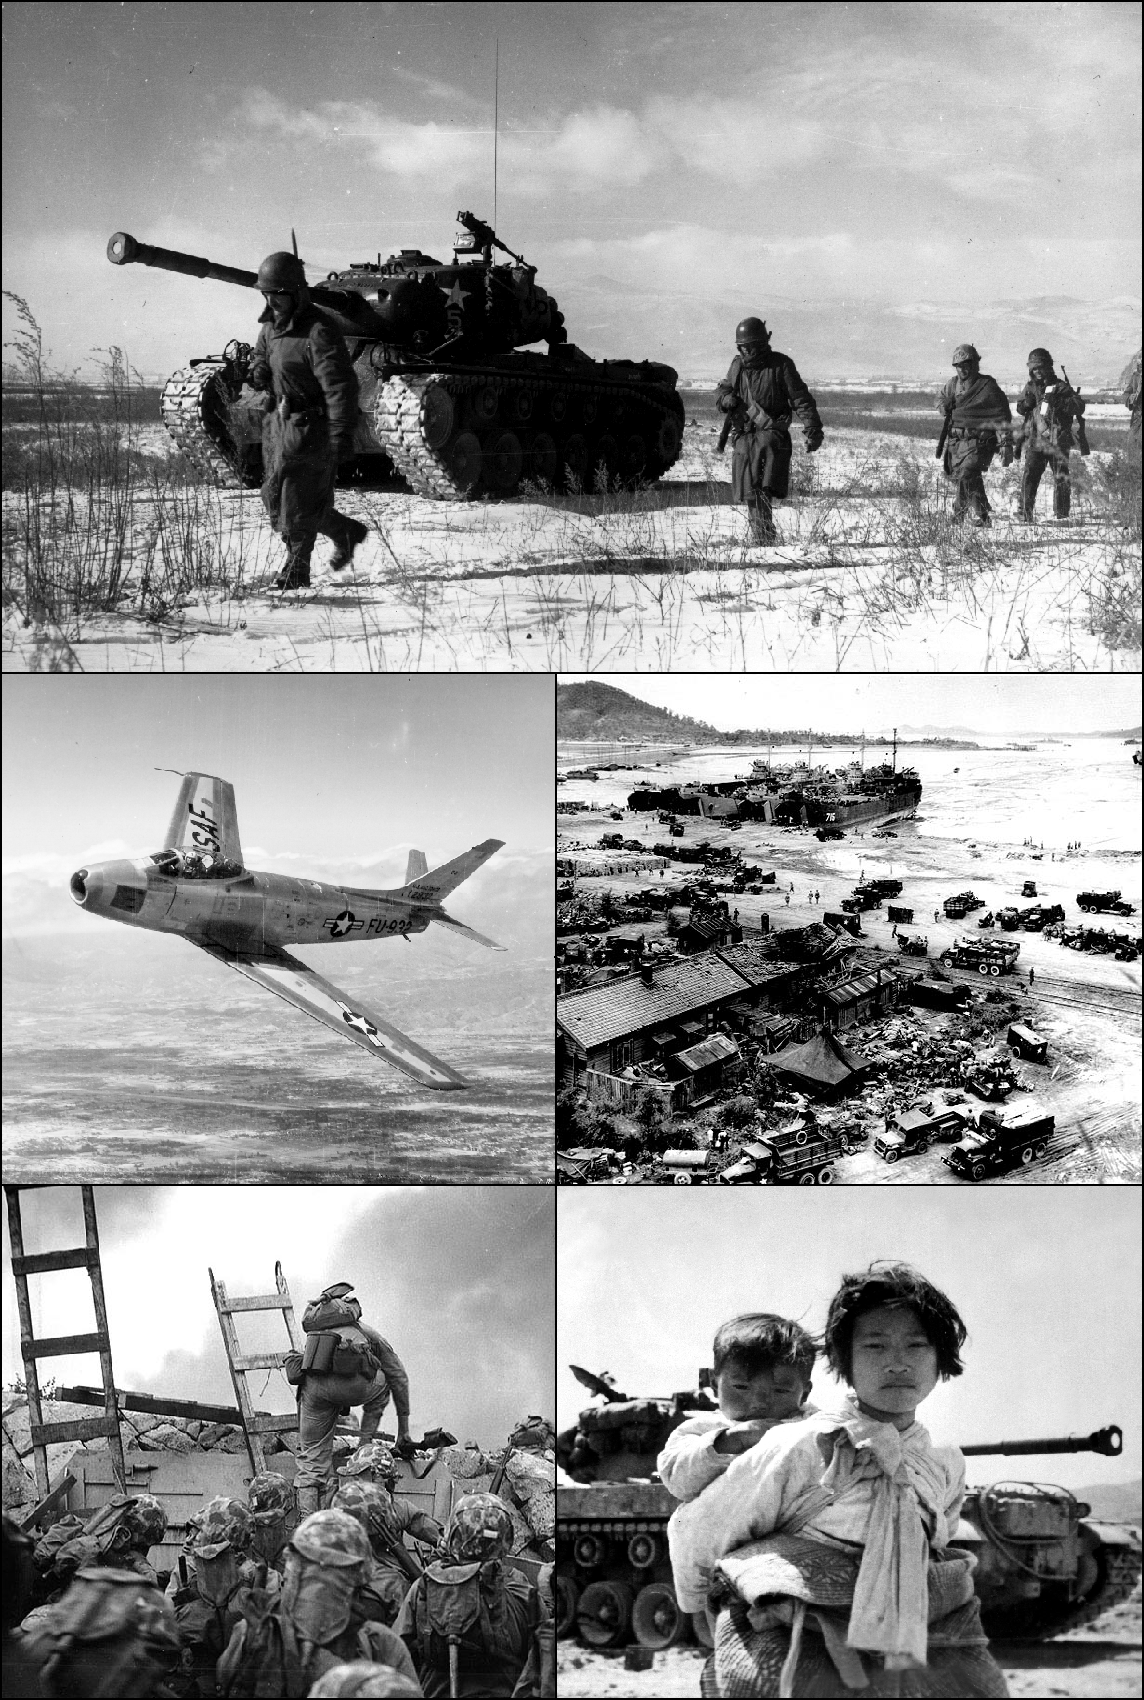 الحرب الكورية (25 يونيو 1950م – 27 يوليو 1953م)